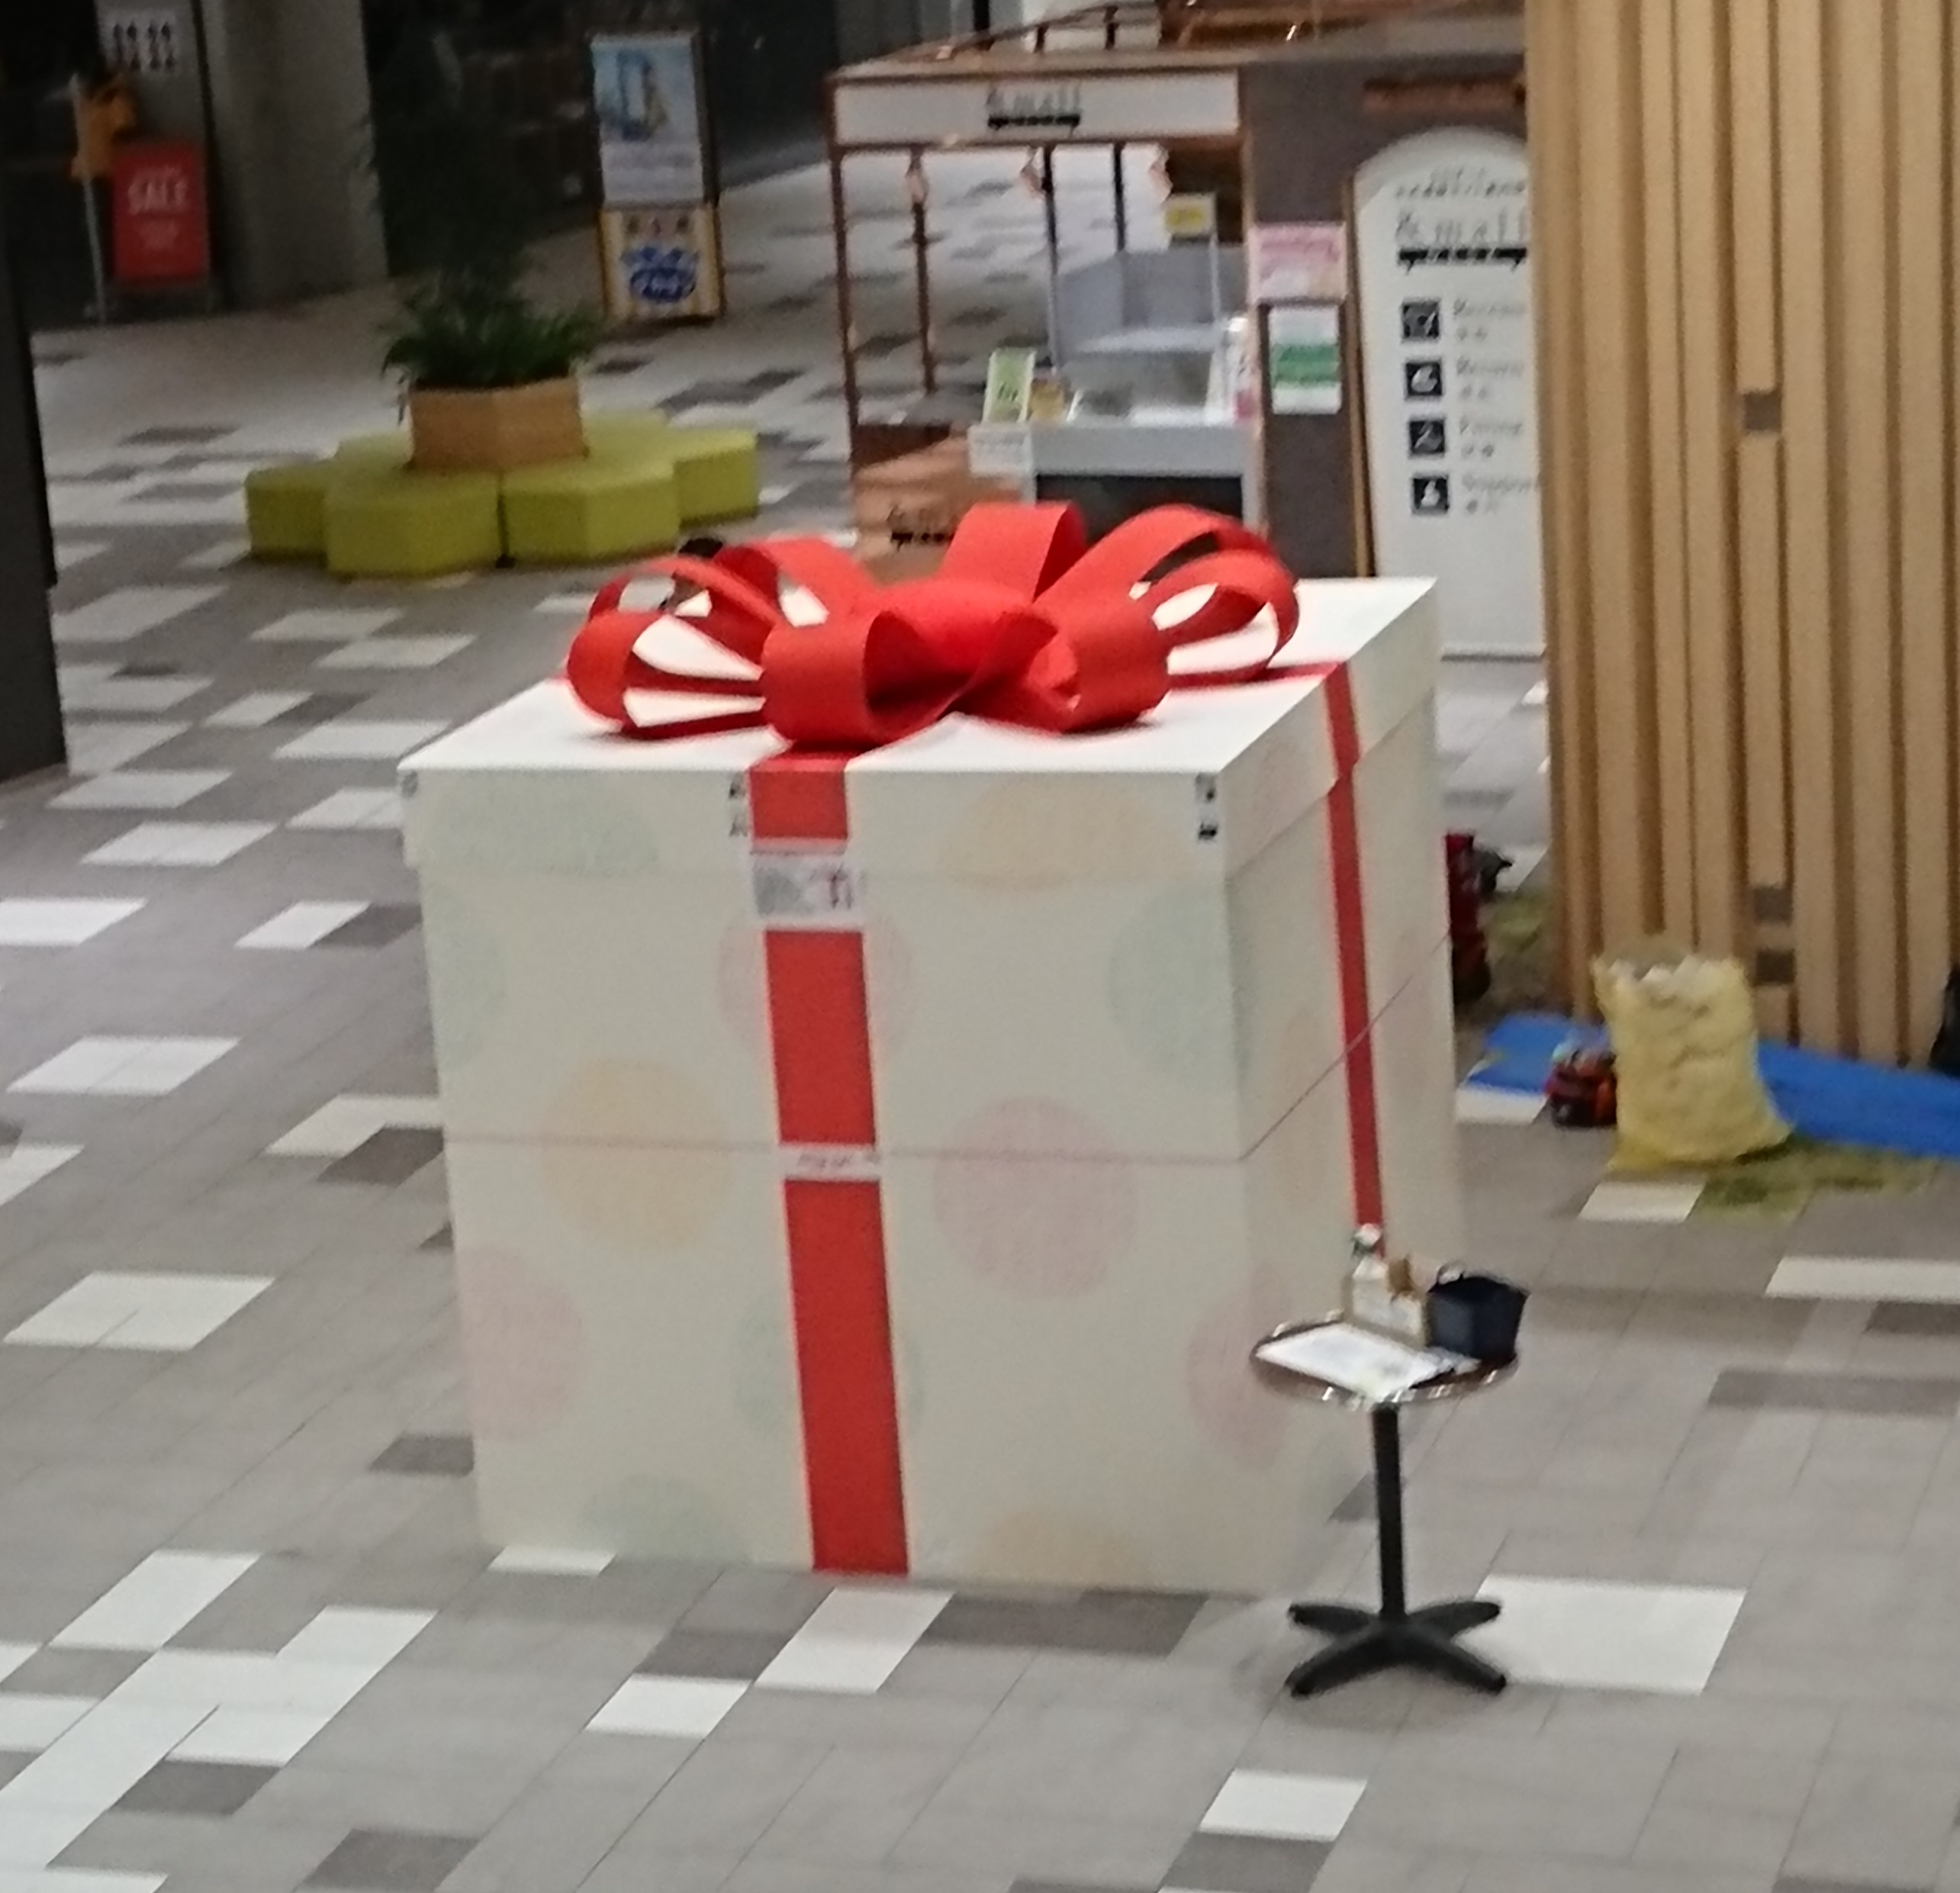 制作実績 愛知県商業施設様 巨大プレゼントボックス装飾 ハンズプロ株式会社